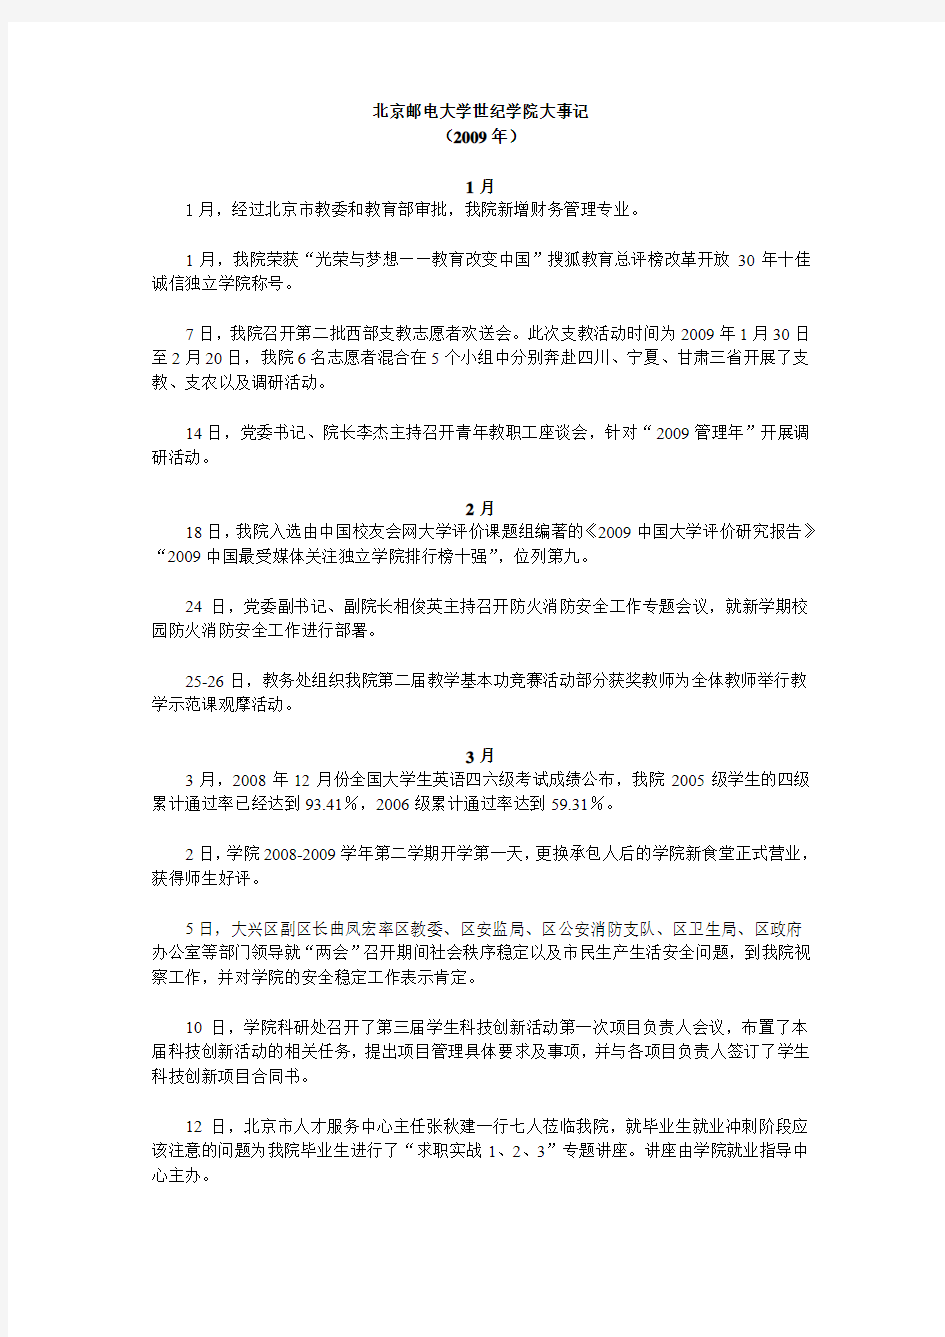 北京邮电大学第十三届研究生学术论坛报名表